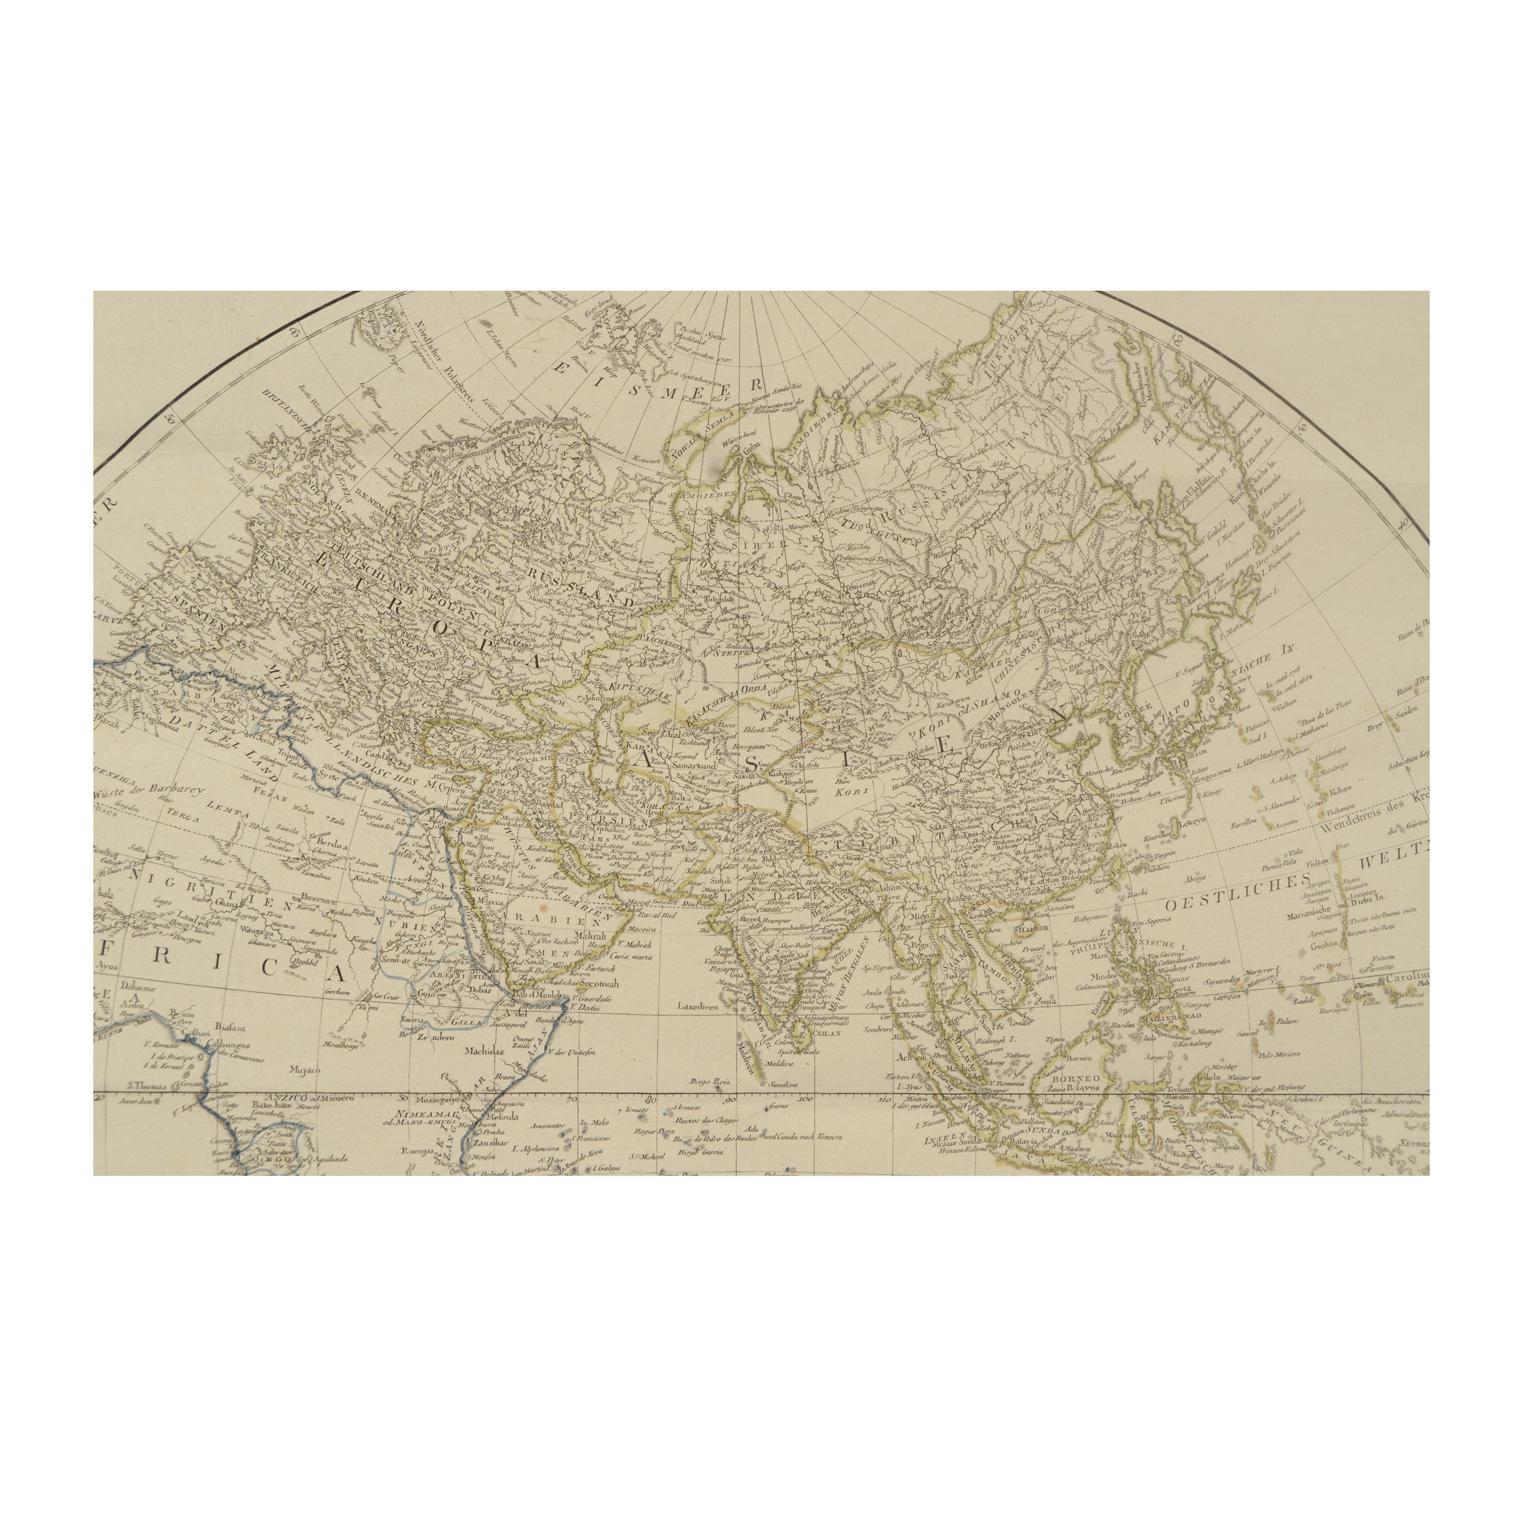 Antique World Map Published in Vienna 1786 by Franz Anton Schraembl 11